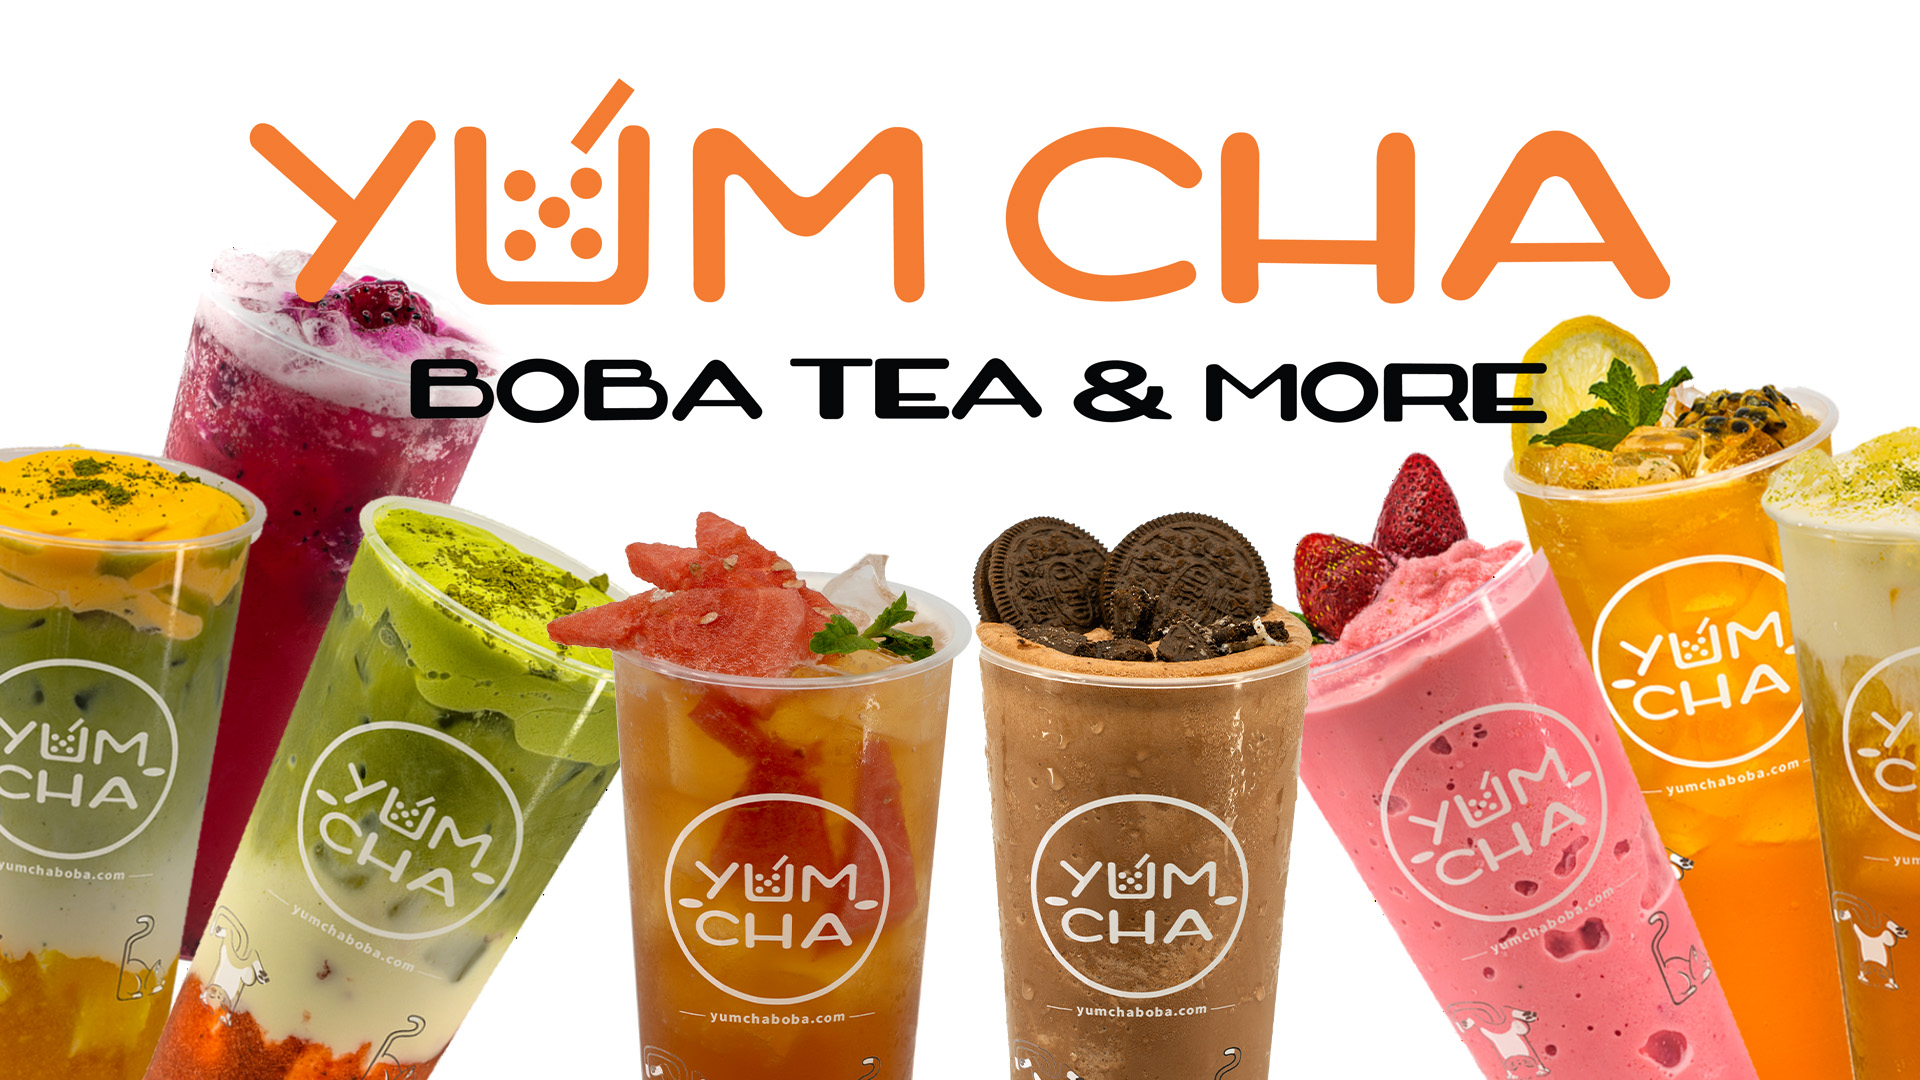 Yum Cha Boba Tea & More